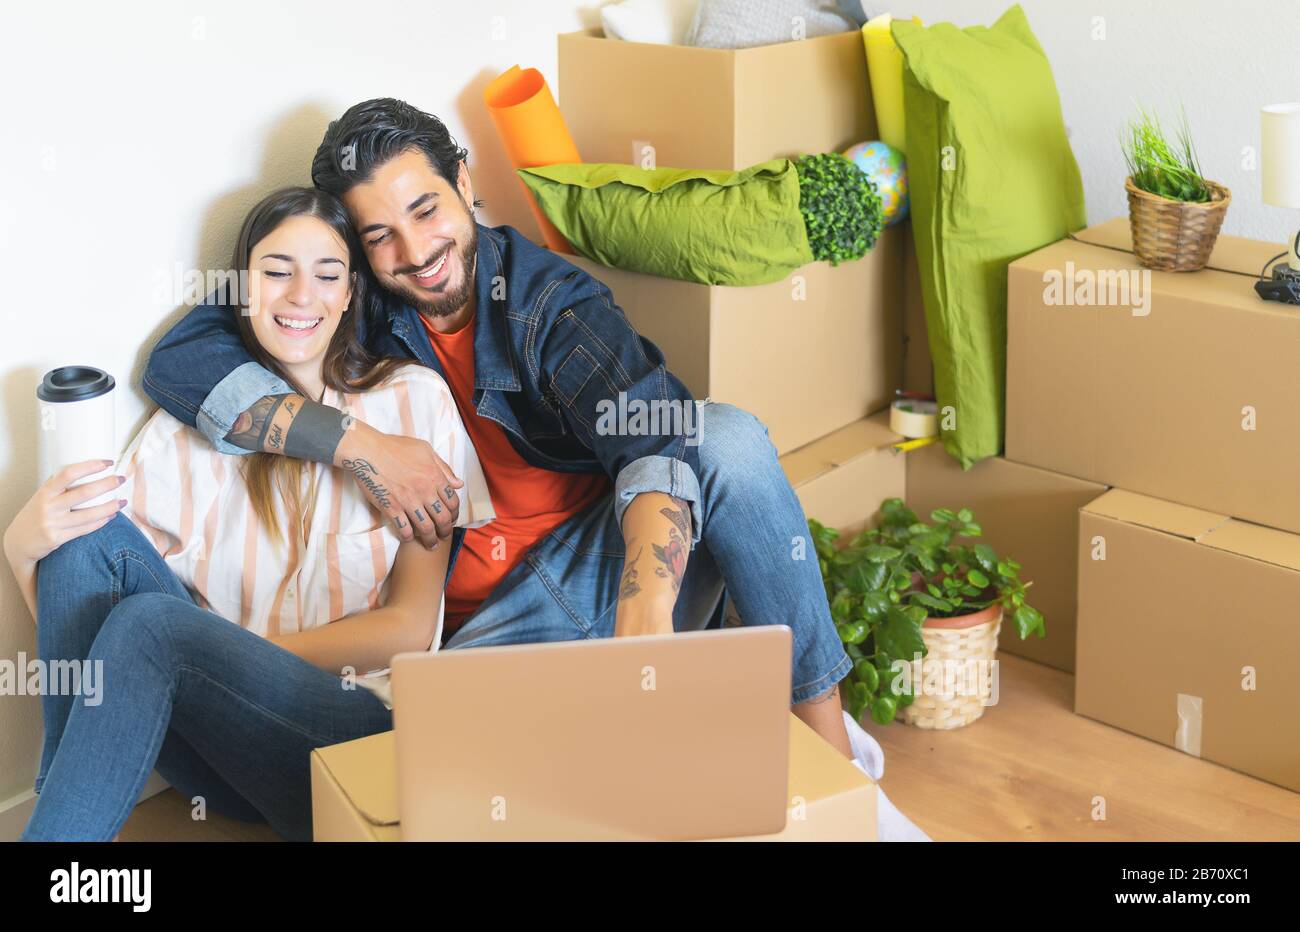 Glückliches junges Paar, das zum ersten Mal nach Hause zieht - Mann und Frau haben Spaß mit dem Computer in der nächsten Kartonbox im neuen Haus Stockfoto